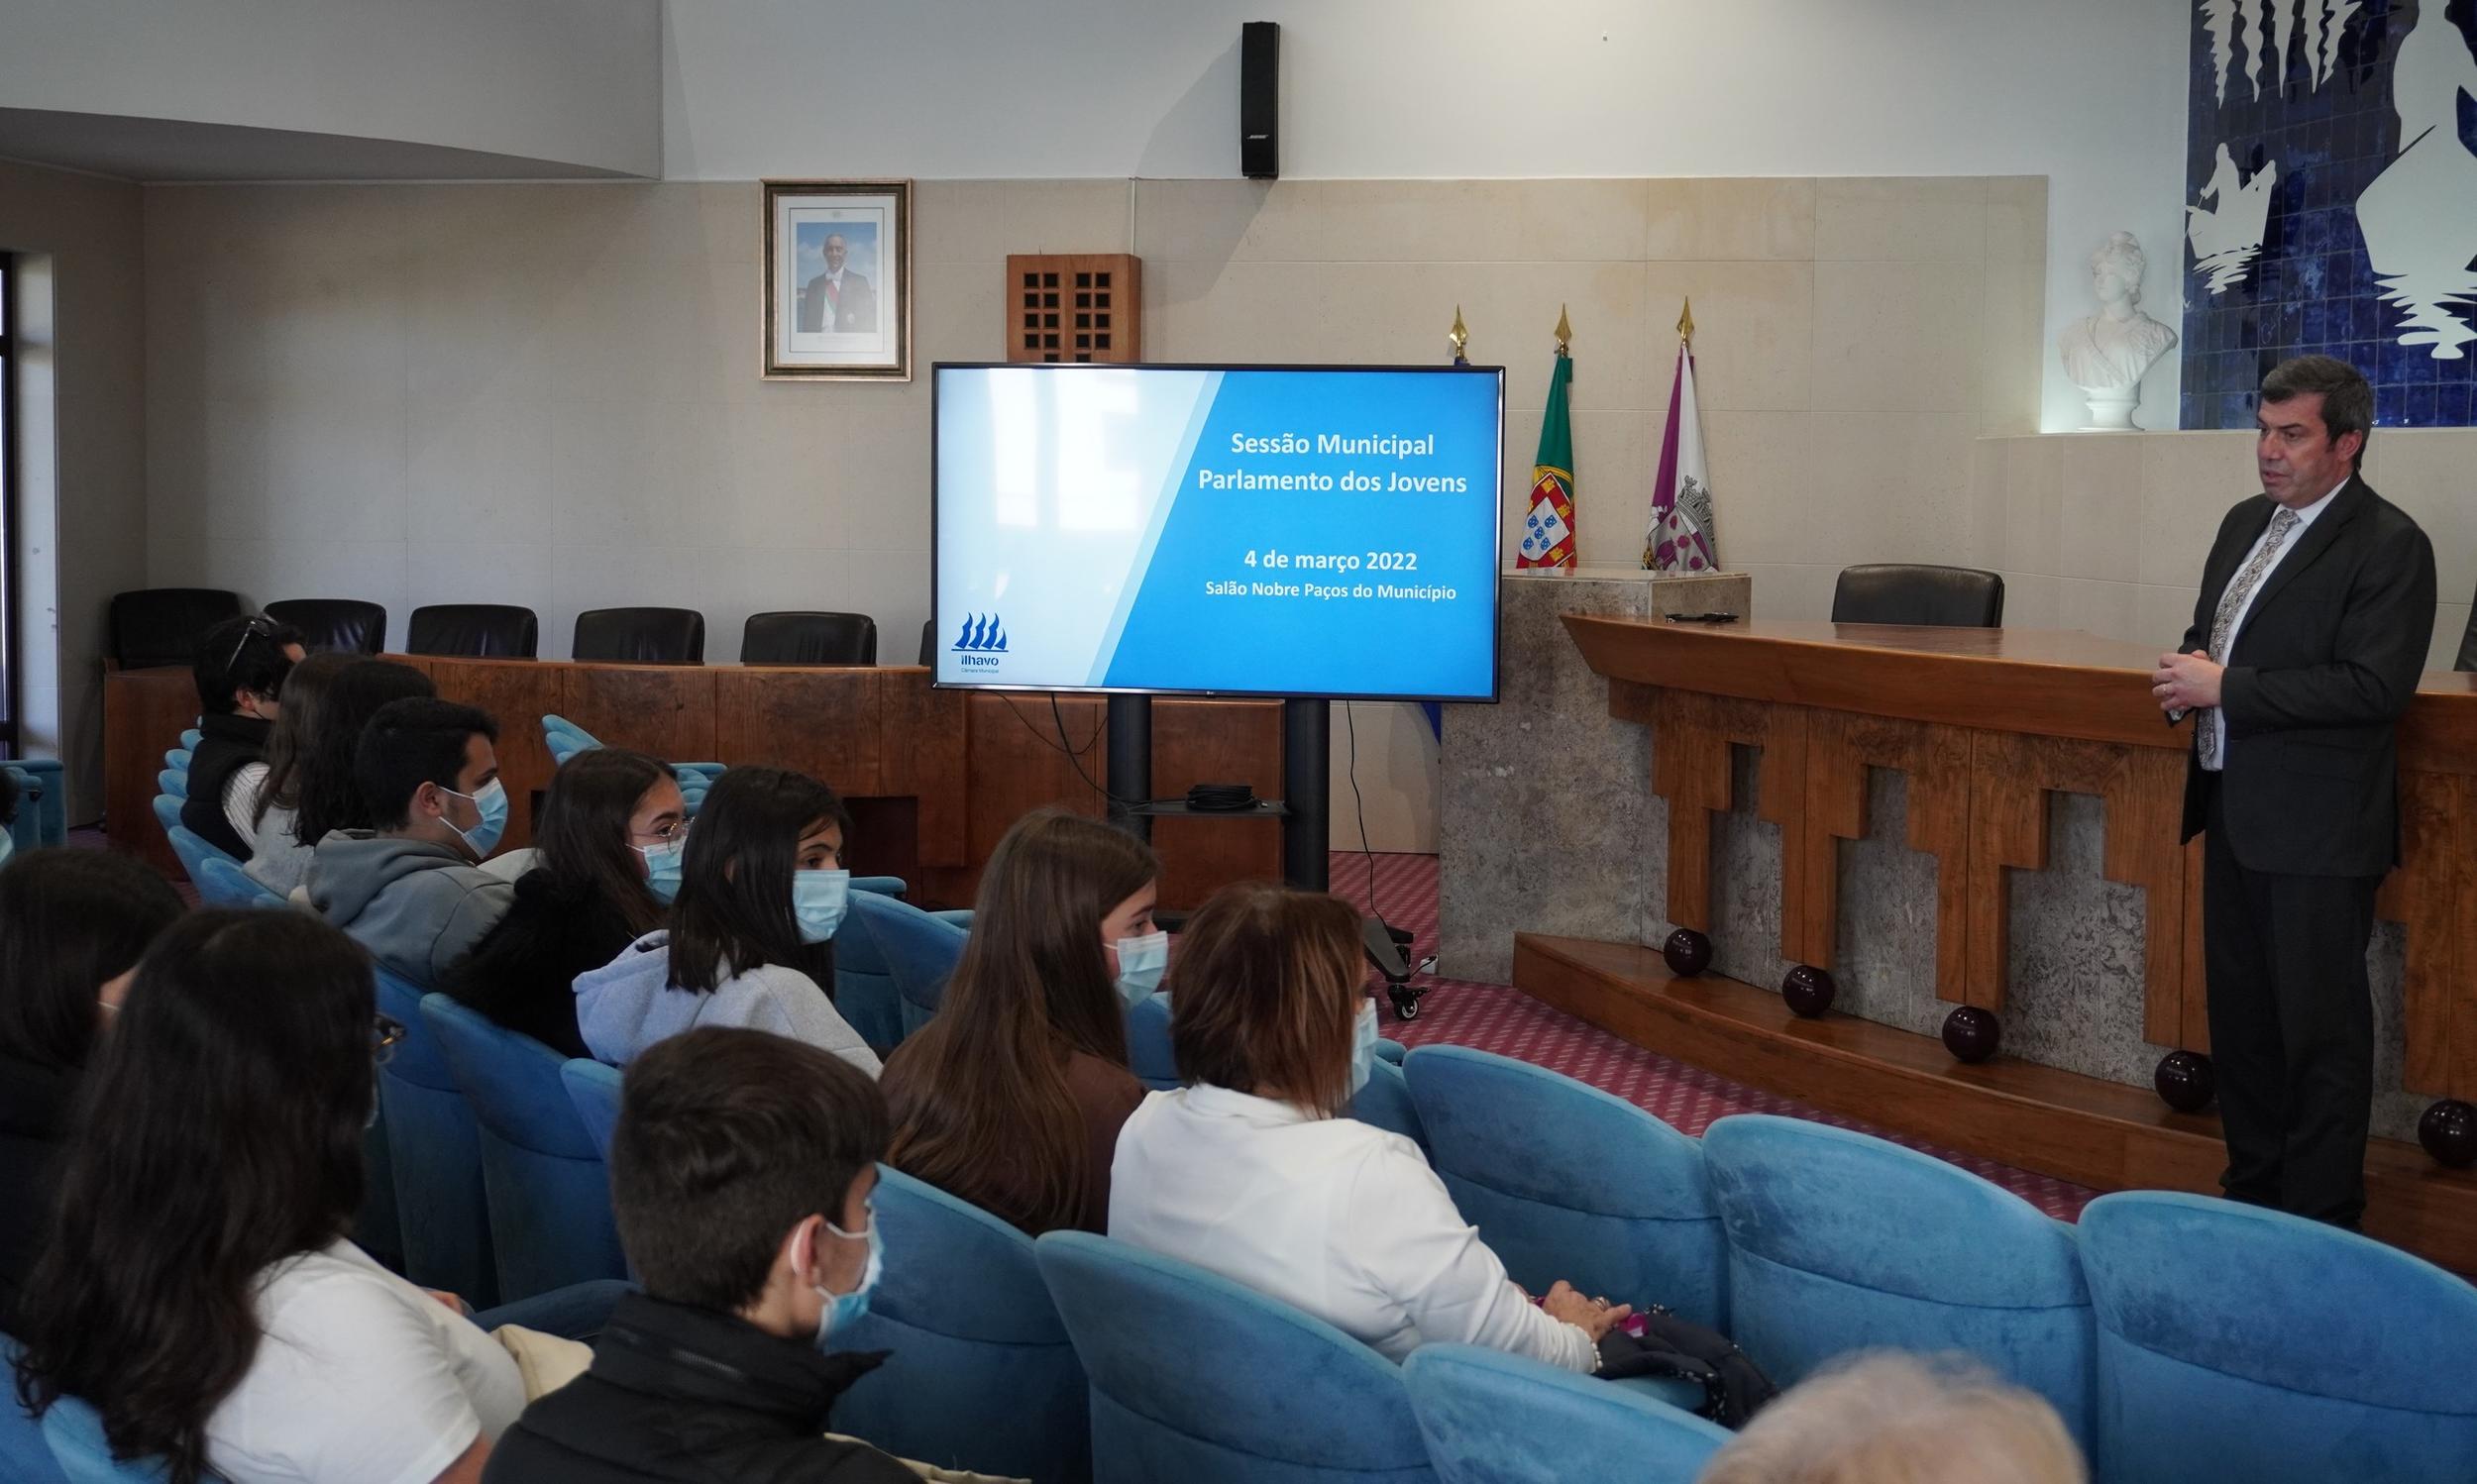 Sessão Distrital/Regional do Parlamento dos Jovens do Ensino Básico tem lugar no Município de Ílhavo